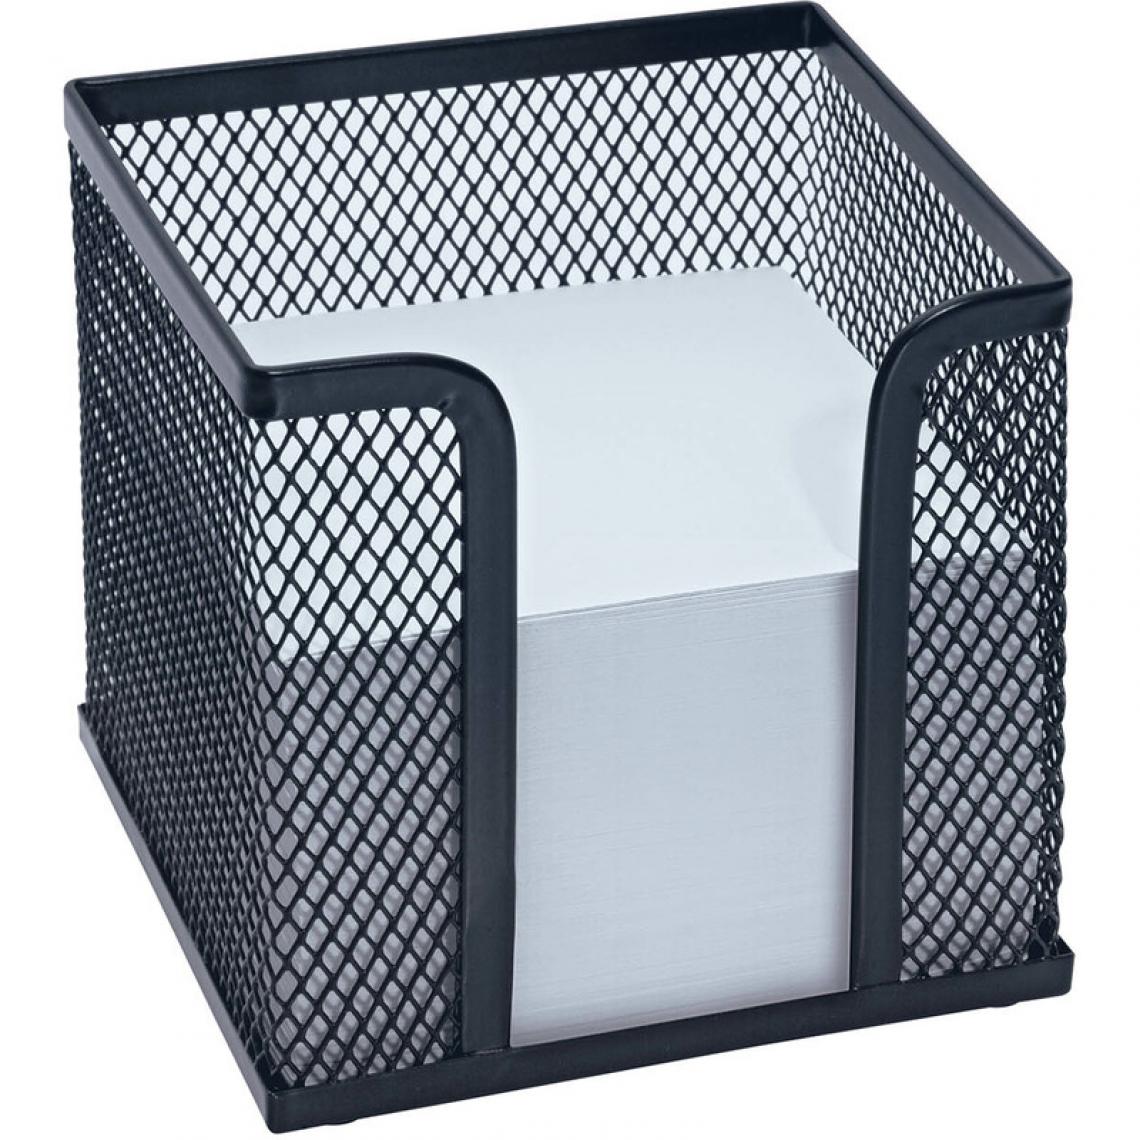 Wedo - WEDO Bloc cube avec boîtier 'Office', fil métallique, noir () - Accessoires Bureau